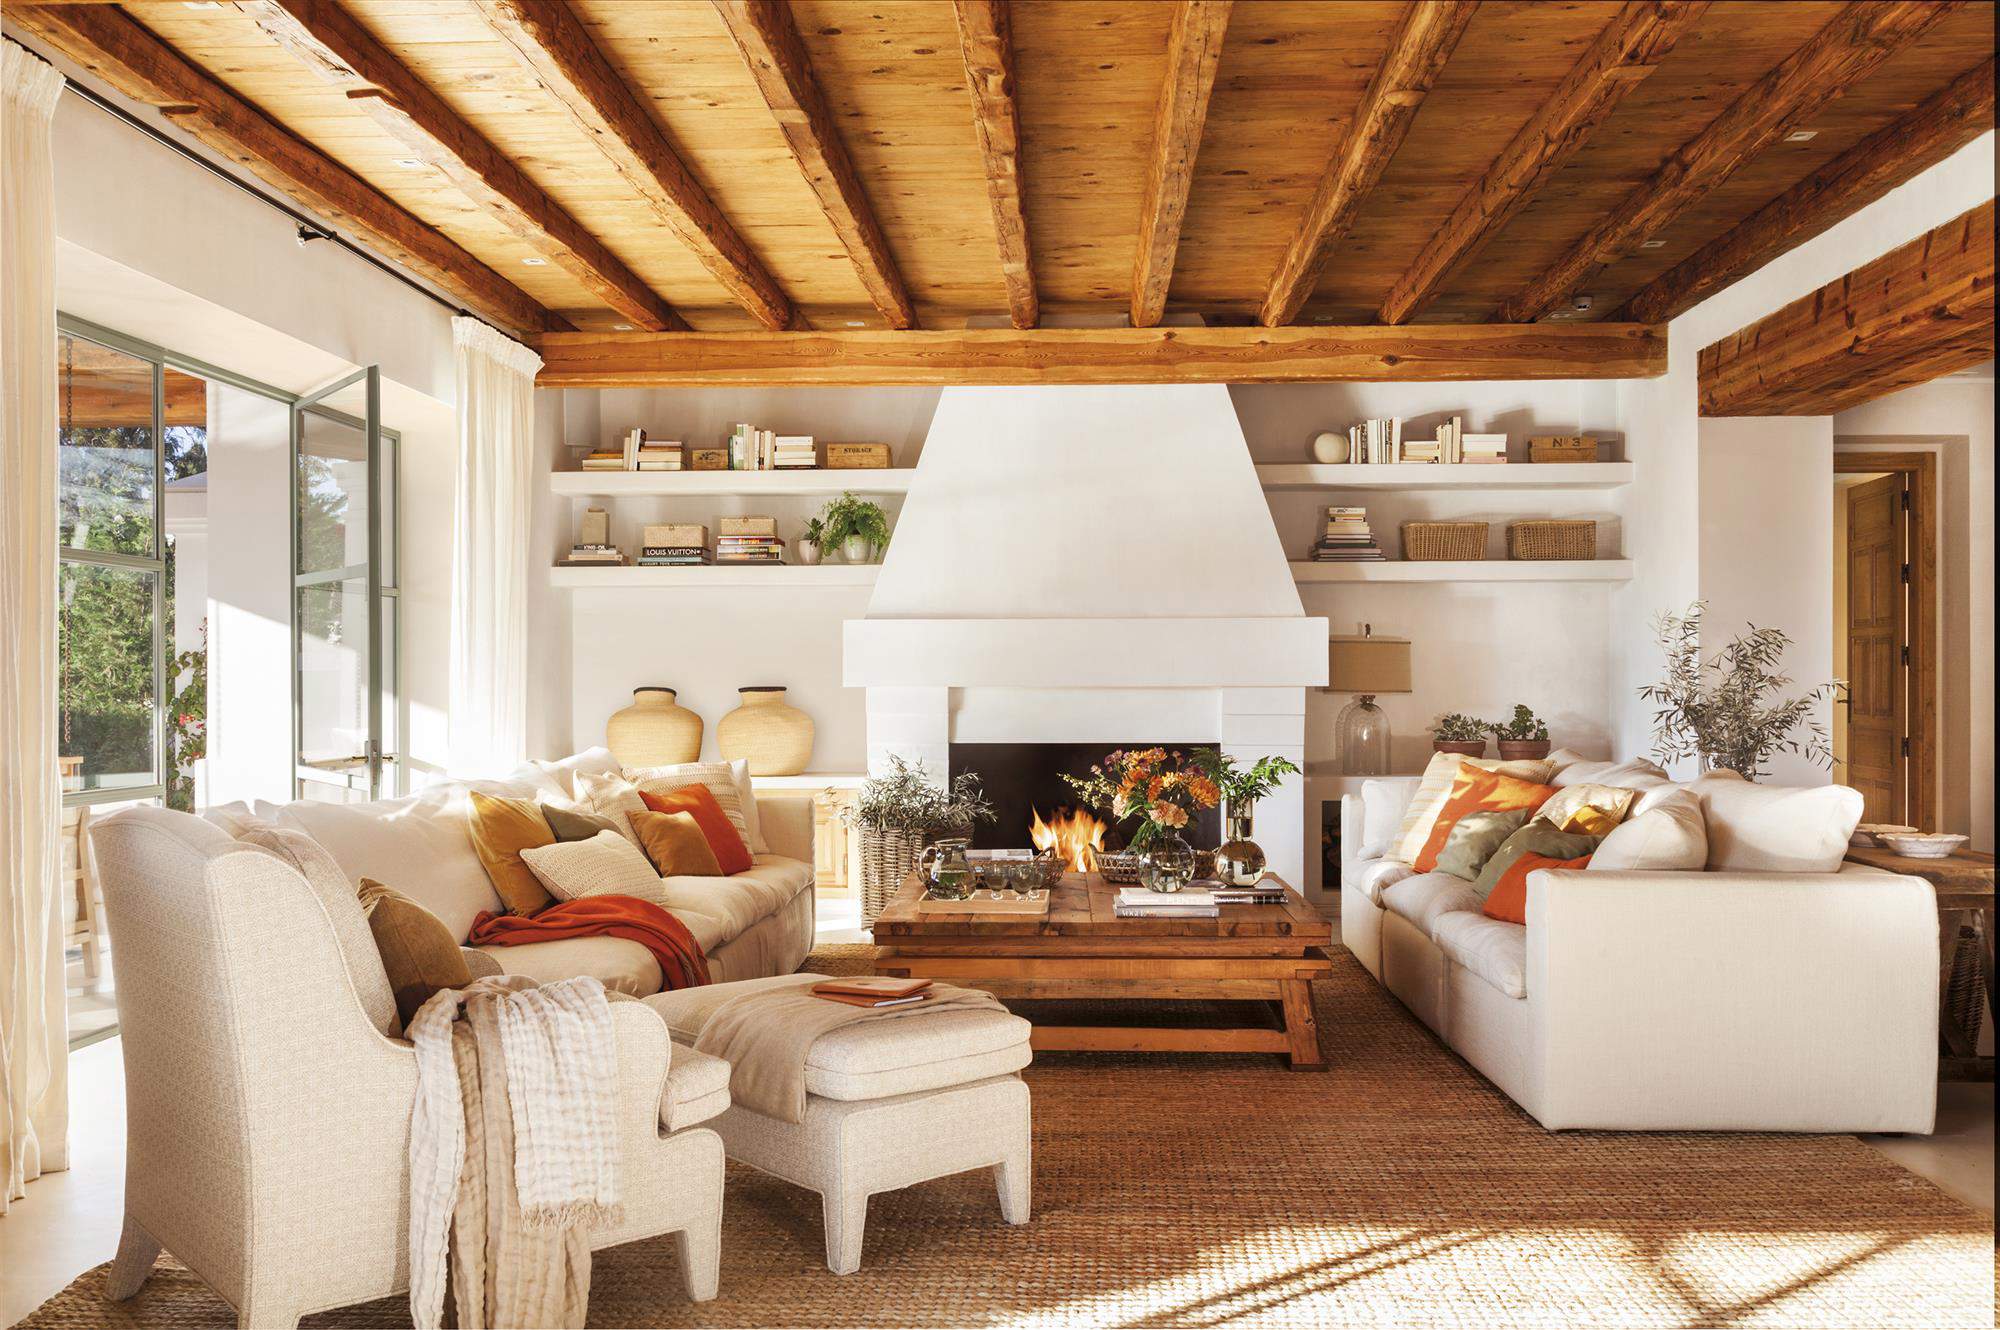 Salón decorado en fibras naturales, chimenea y mobiliario blanco, con vigas de madera natural a la vista.